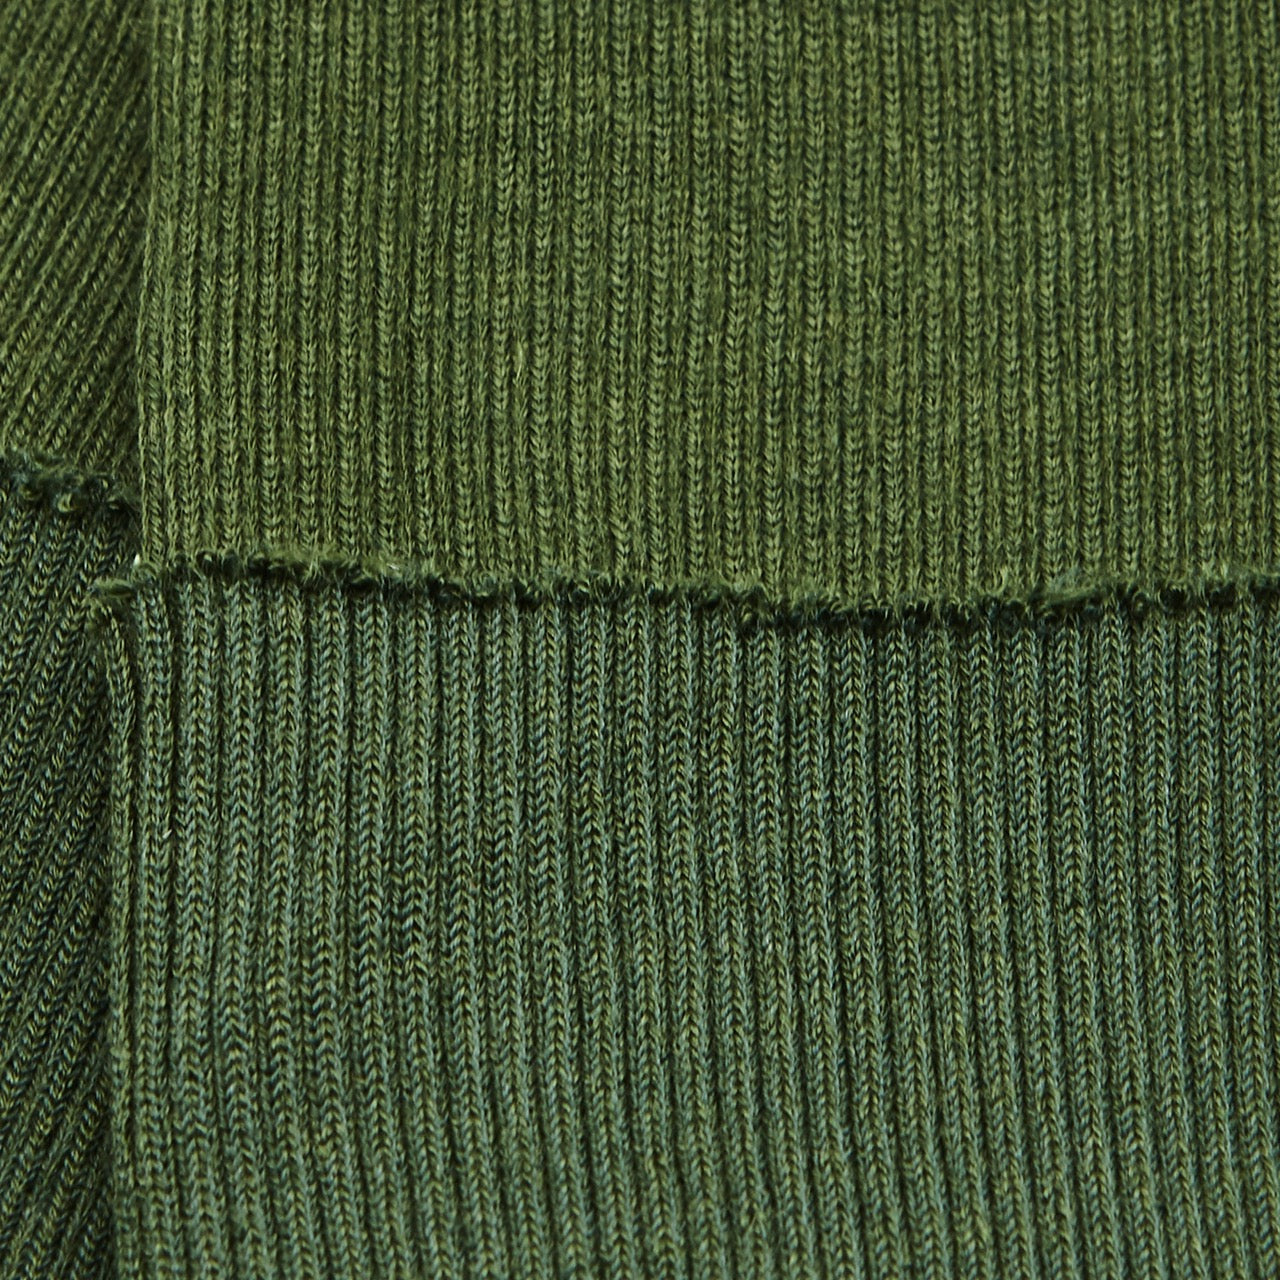 Cuffing / Tubular - Green (detail)